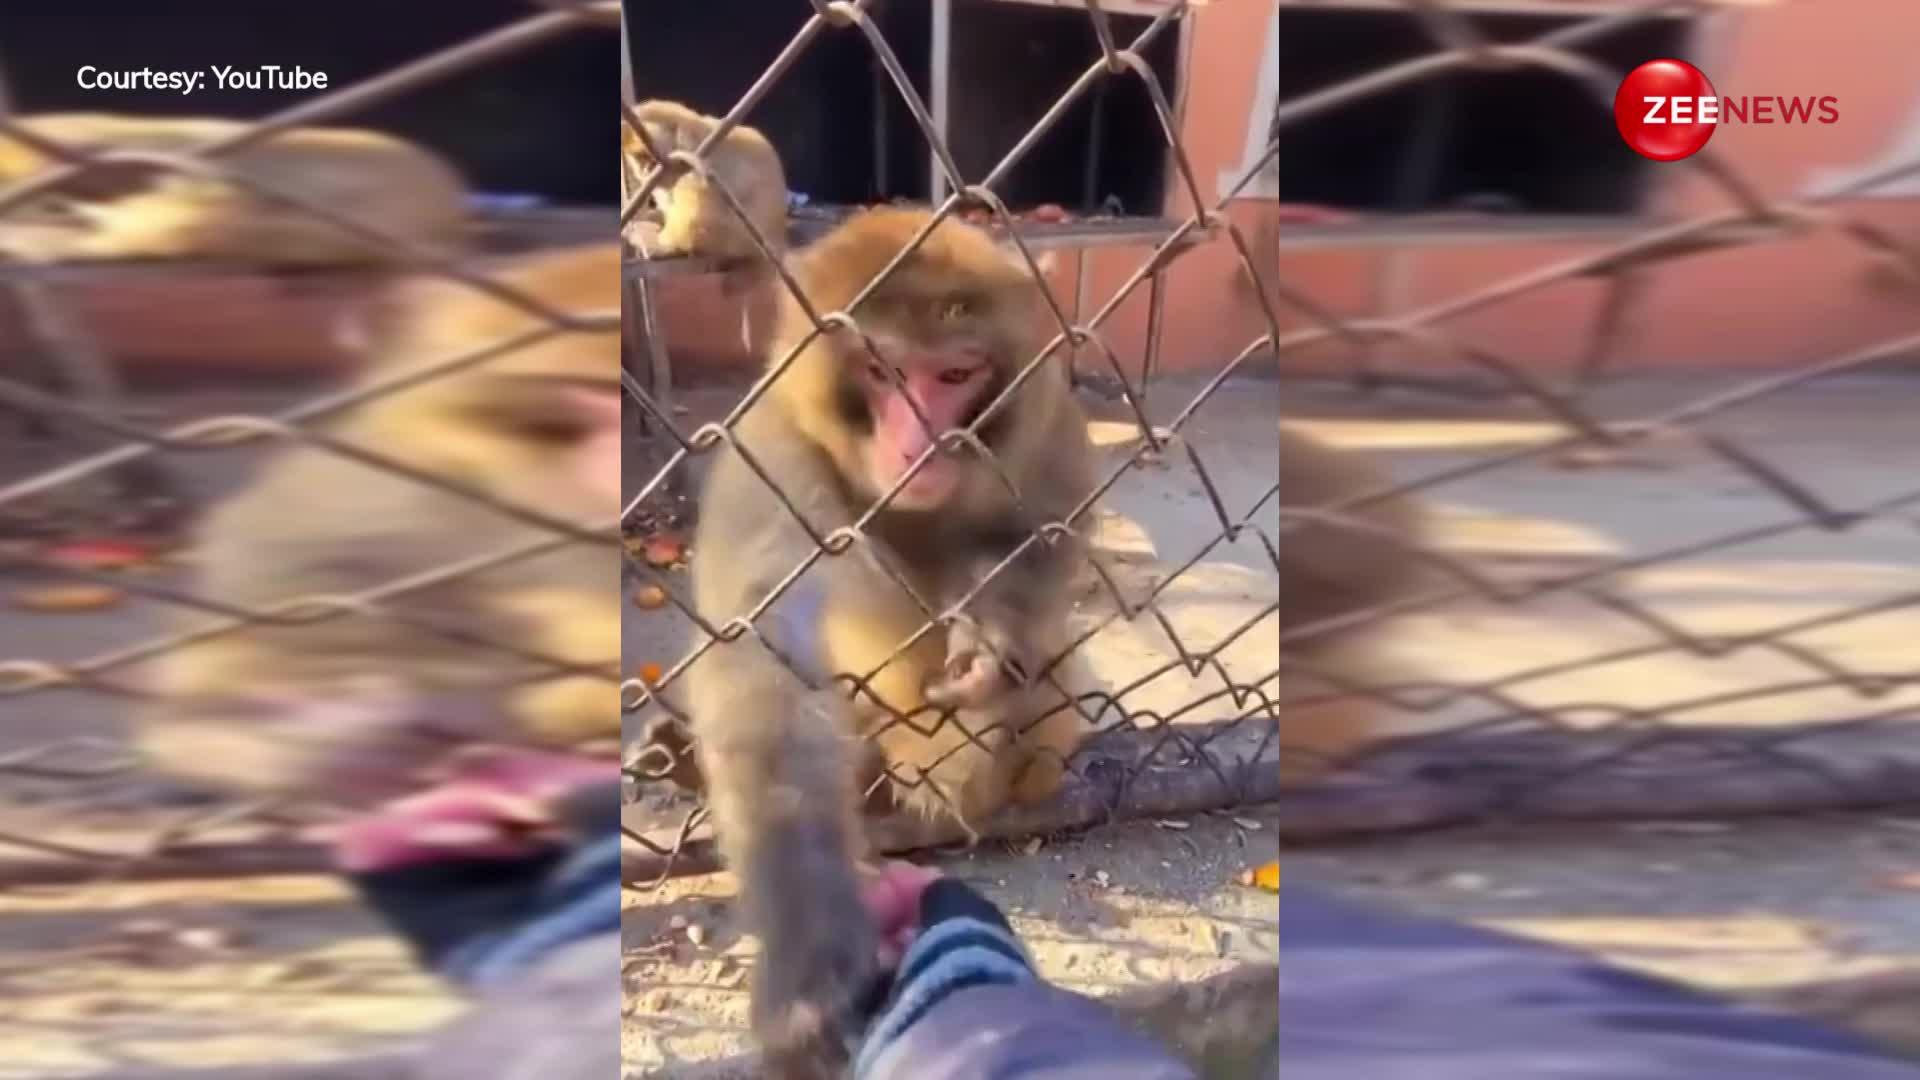 बंदर को खाना खिलाना आदमी को पड़ा भारी, गुस्से में फाड़ दिए कपड़े, देखें वायरल वीडियो